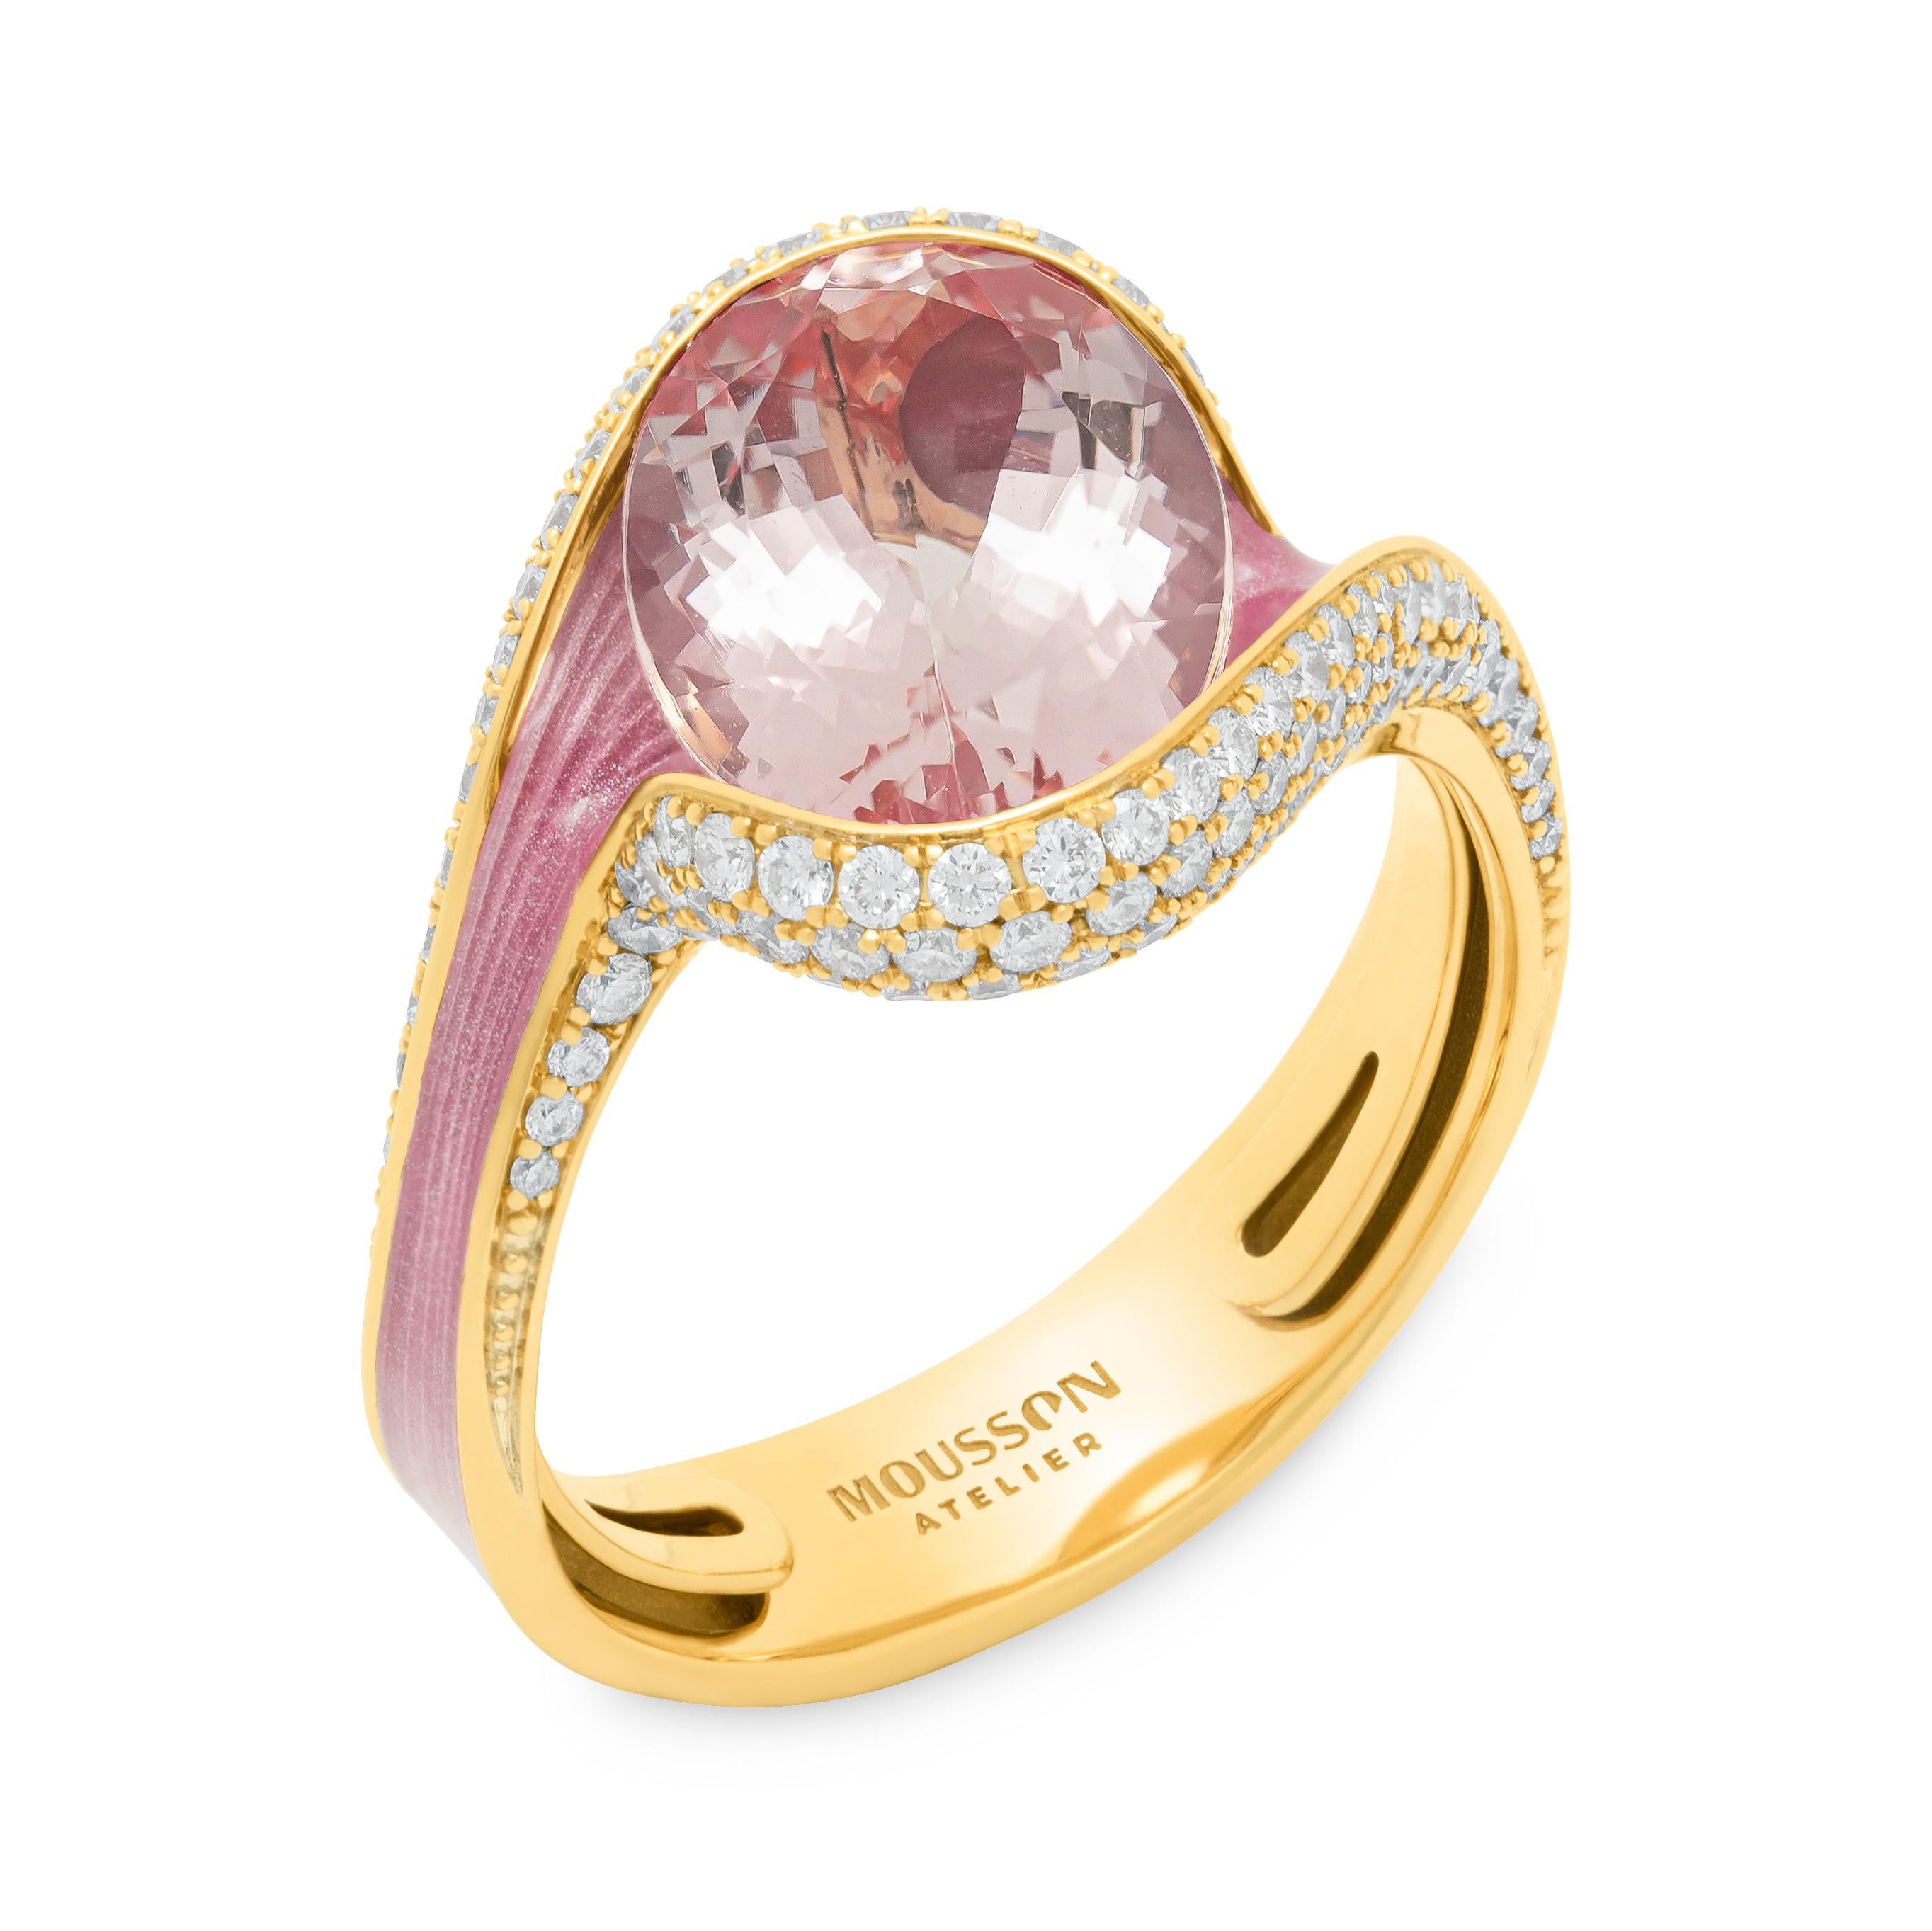 Morganit 3,83 Karat Diamanten Emaille 18 Karat Gelbgold Geschmolzene Farben Ring

Wir stellen unseren neuen Ring aus der so beliebten Melted Colors Collection'S vor. Diese Collection'S ist in allen Farben des Regenbogens gehalten. Alle Steine sind